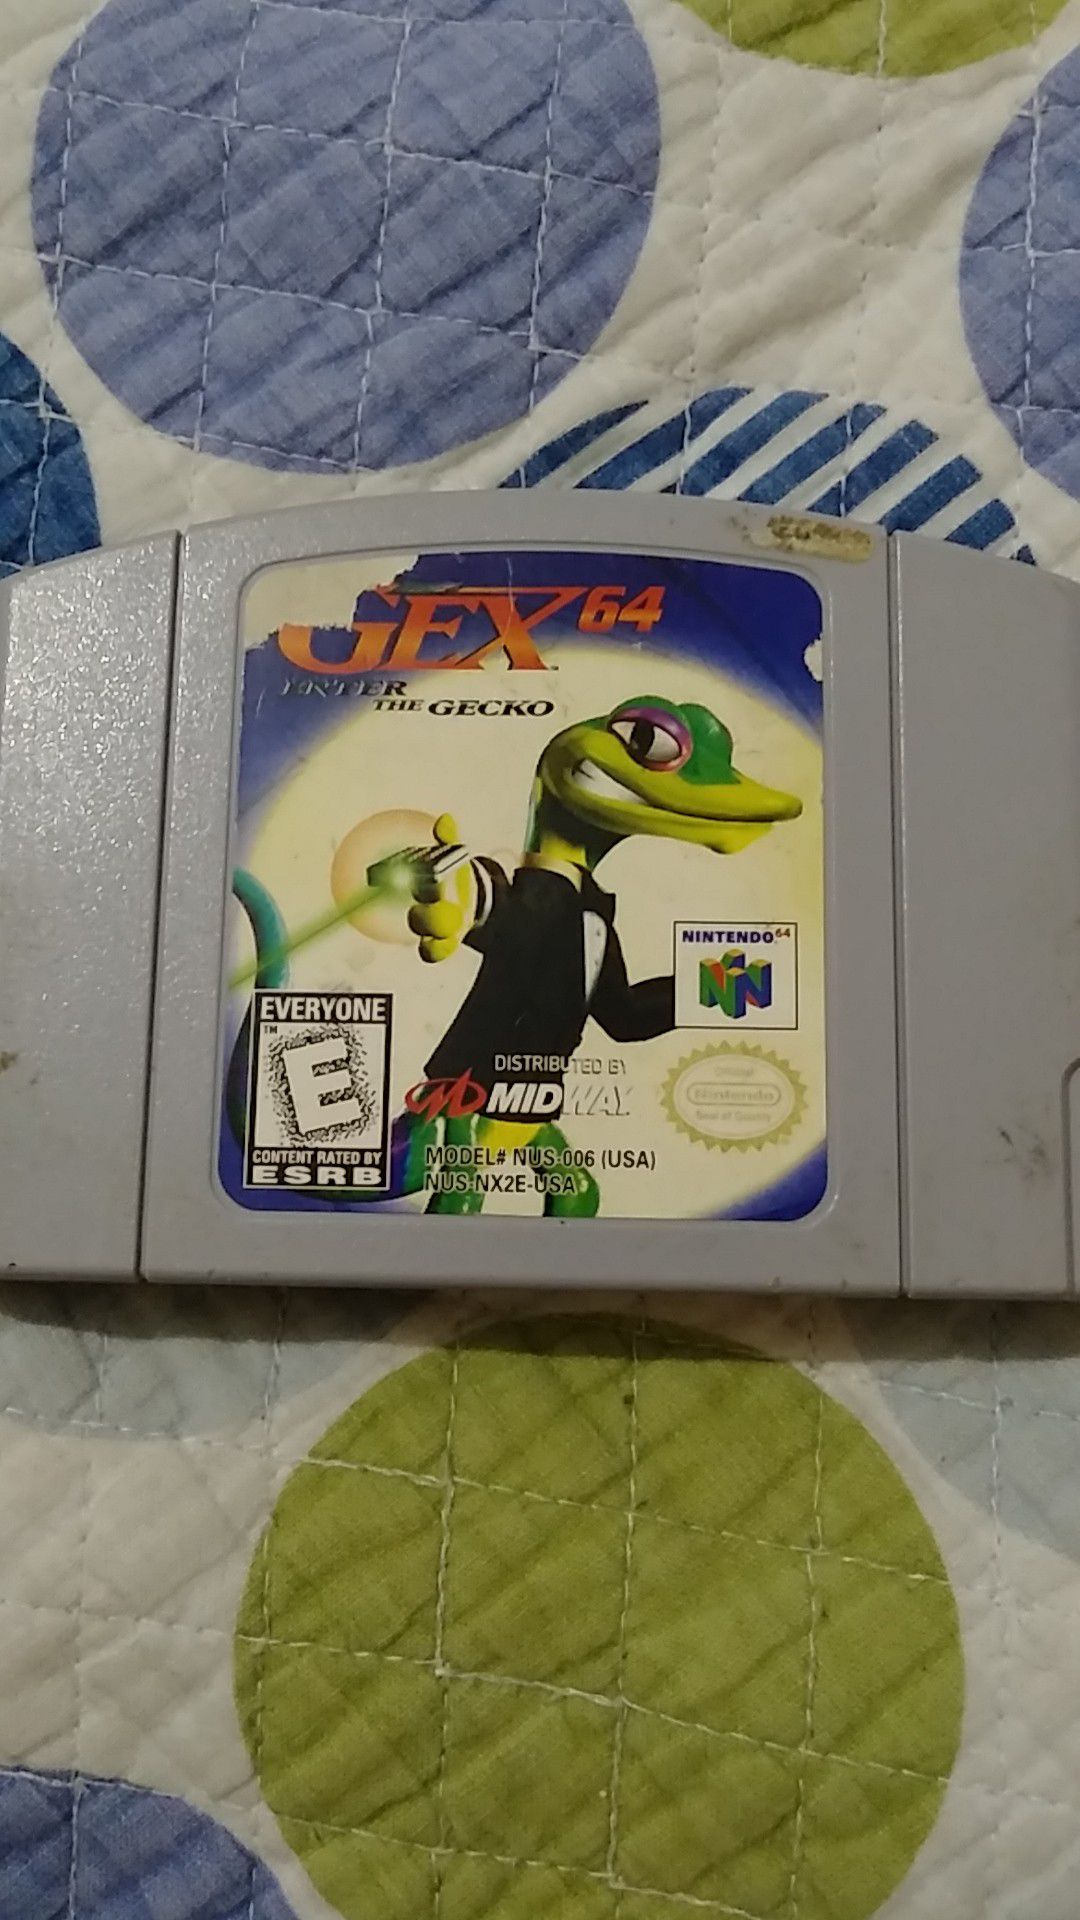 Nintendo 64 Gex64